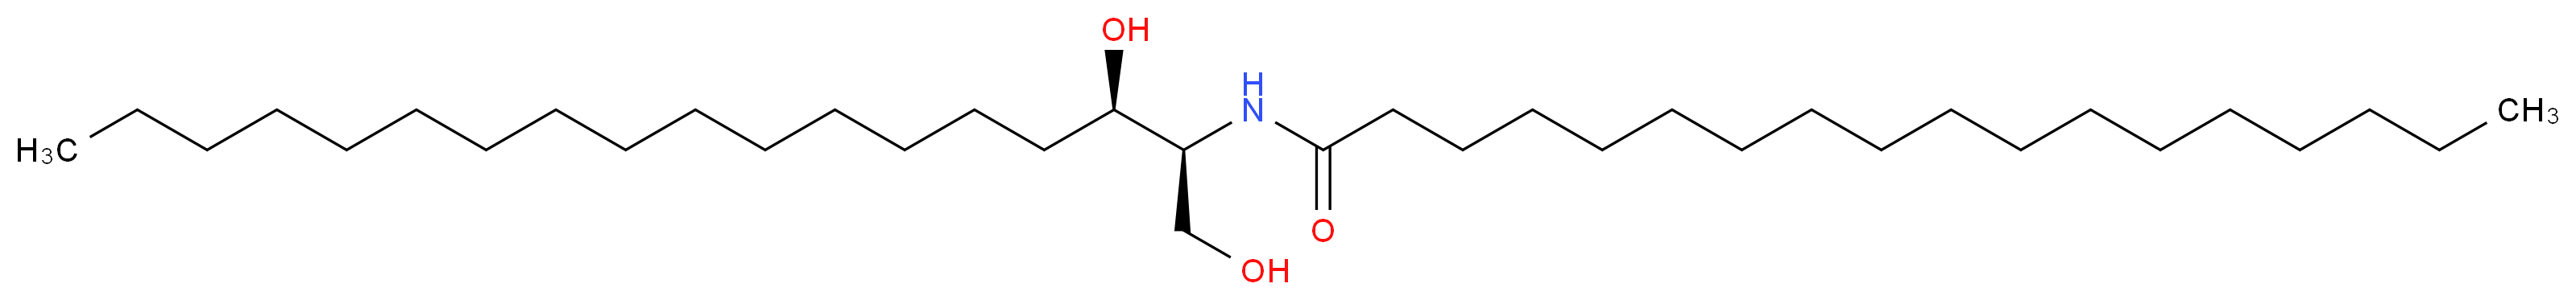 2304-80-5 molecular structure